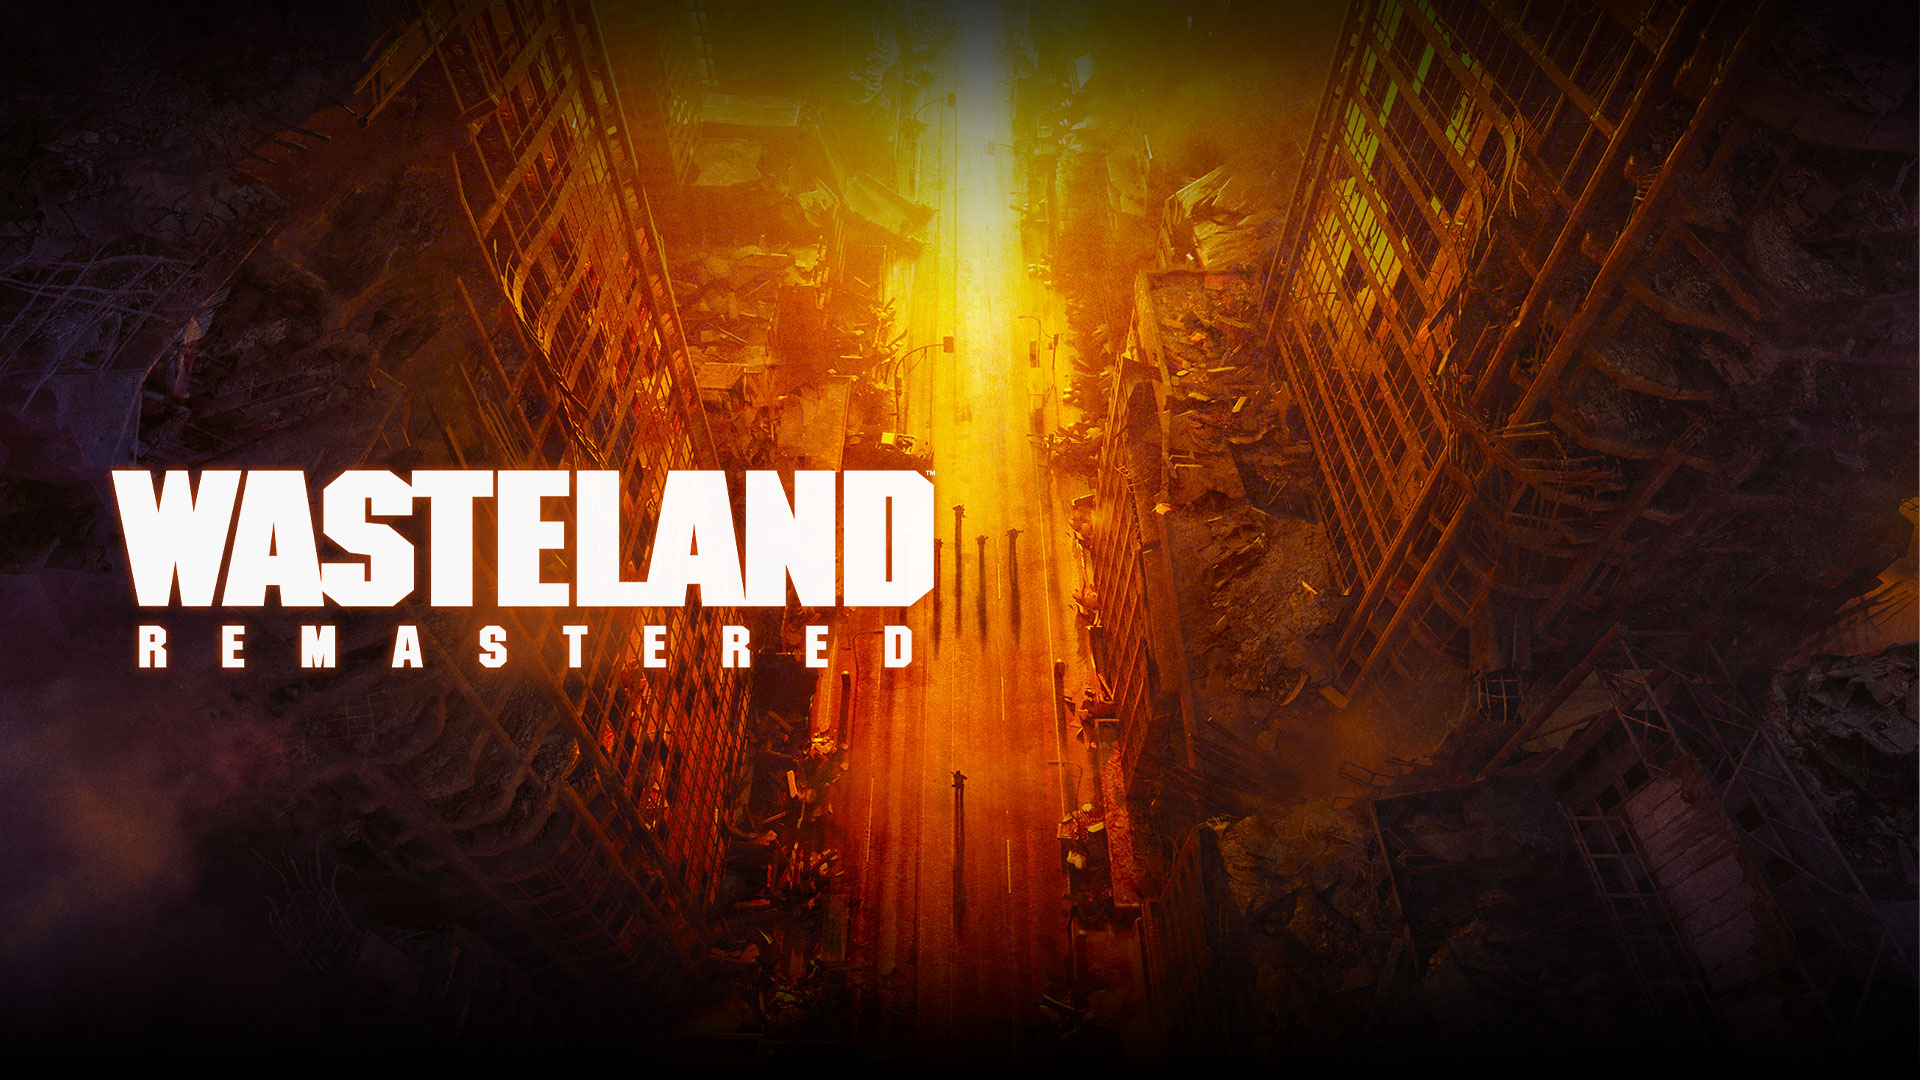 Wasteland Remastered, felülnézet romos épületekről és az utcán lévő emberekről citromsárga, narancssárga és vörös árnyalatokban